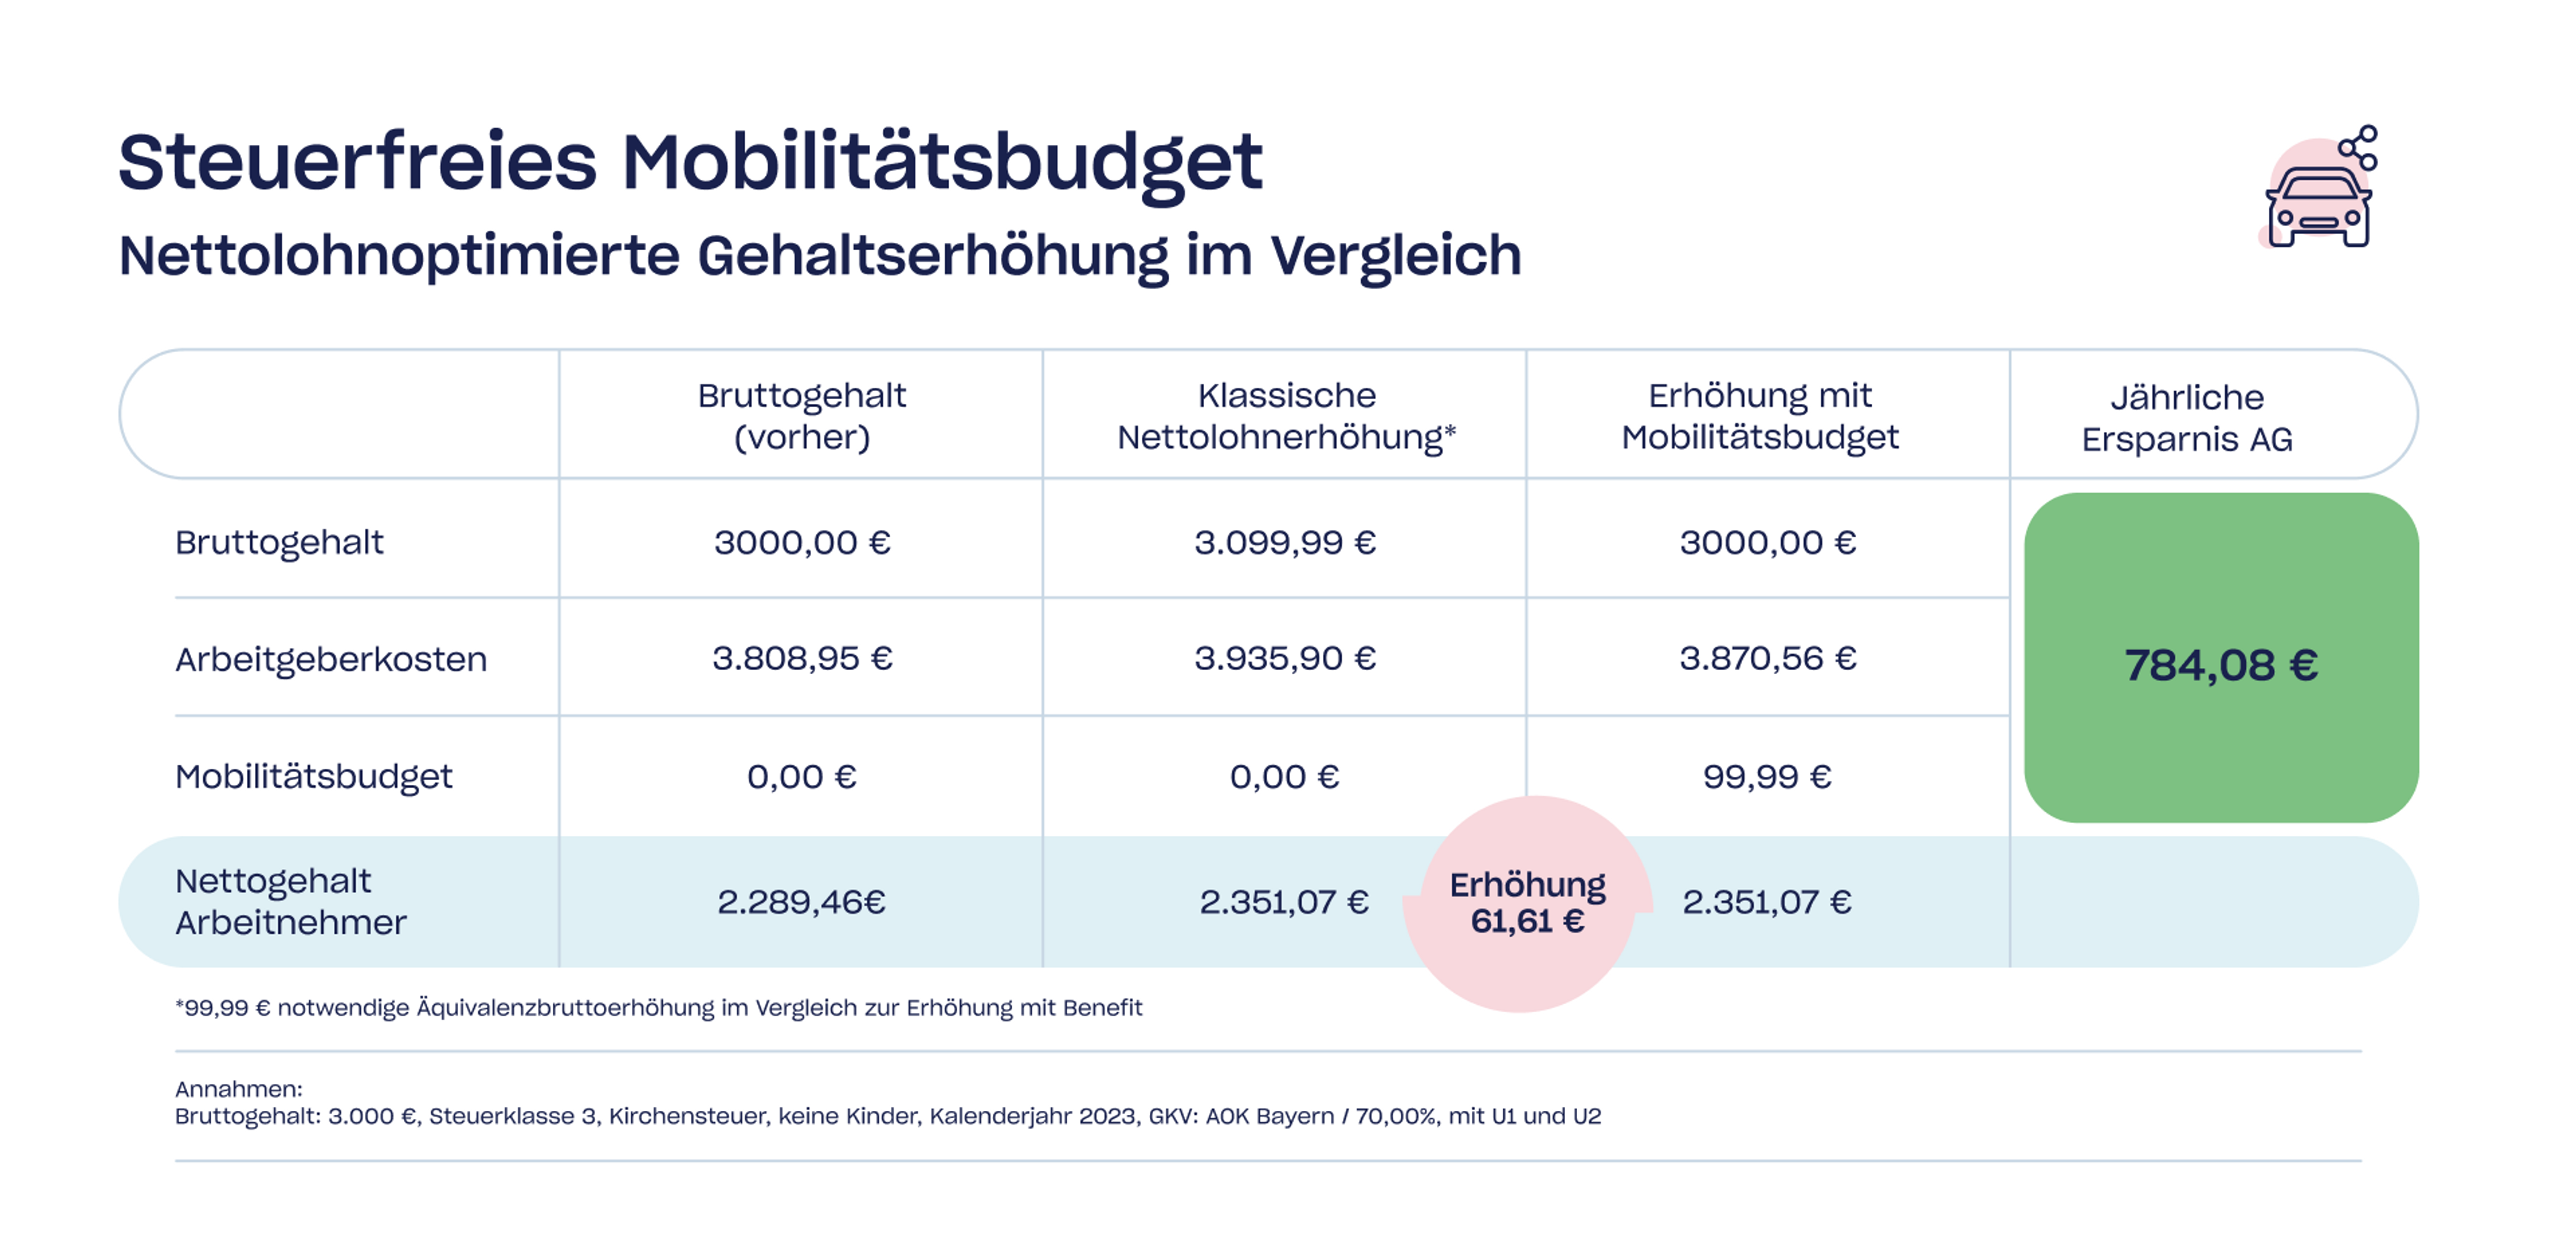 Nettolohnoptimierung mit dem steuerfreien Mobilitätsbudget